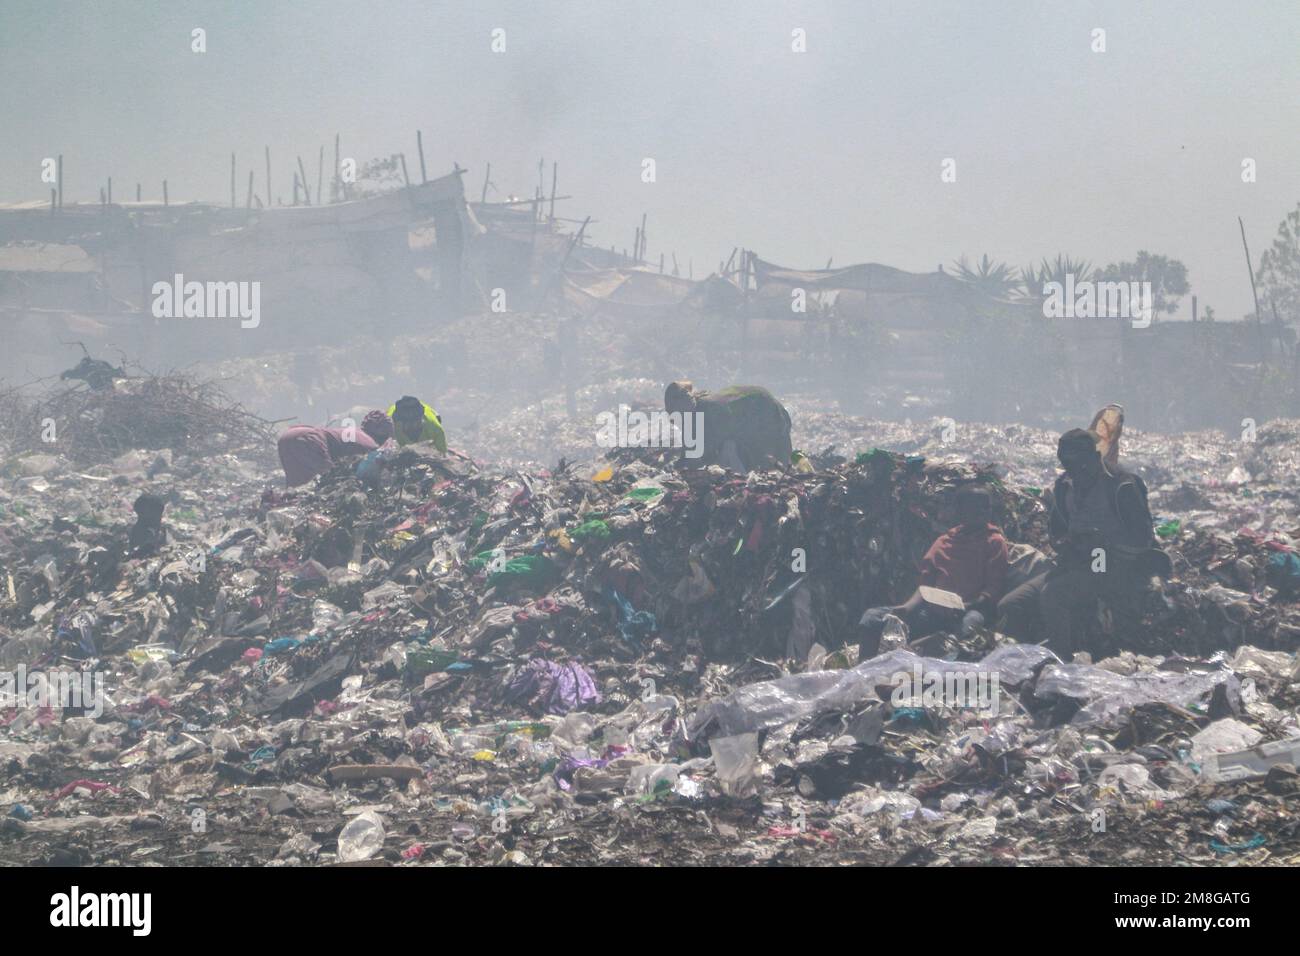 I raccoglitori di rifiuti recuperano i rifiuti per il riciclaggio in mezzo al fumo pesante da rifiuti bruciati nel deposito di scarico principale di Nakuru. Poiché i rifiuti sono raramente segregati ed è fortemente mescolati con tutti i tipi di rifiuti, bruciarli può produrre fumi potenzialmente tossici che possono essere un problema di salute pubblica e possono anche contribuire al cambiamento climatico. Le comunità che lavorano e vivono in prossimità di siti di scarico in cui la spazzatura viene apertamente bruciata rischiano di contrarre malattie respiratorie e tumori. Le donne esposte a tali fumi possono soffrire di problemi di salute riproduttiva. Foto Stock